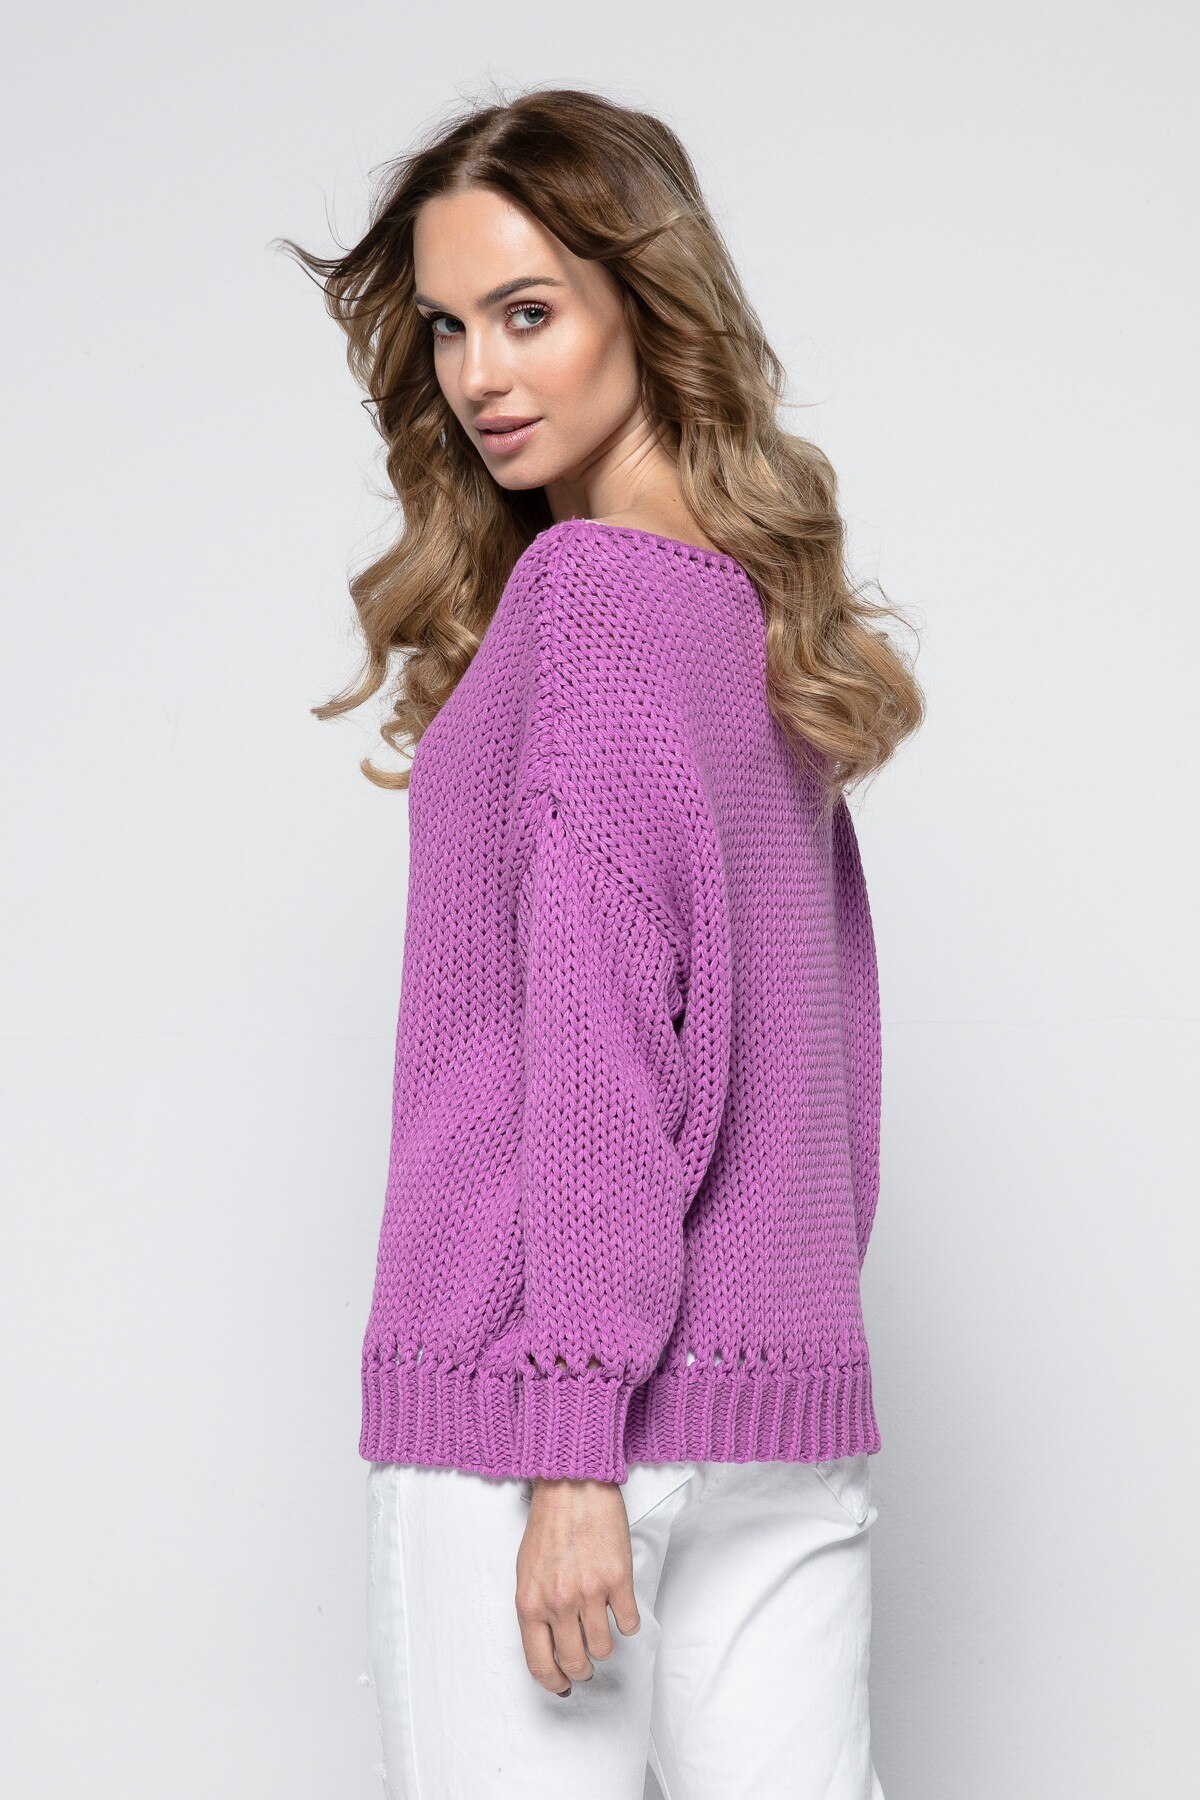 Джемперы большие размеры вайлдберриз. FIMFI i242 свитер женский. Фиолетовый свитер. Сиренево-розовый свитер. Фиолетовый джемпер.